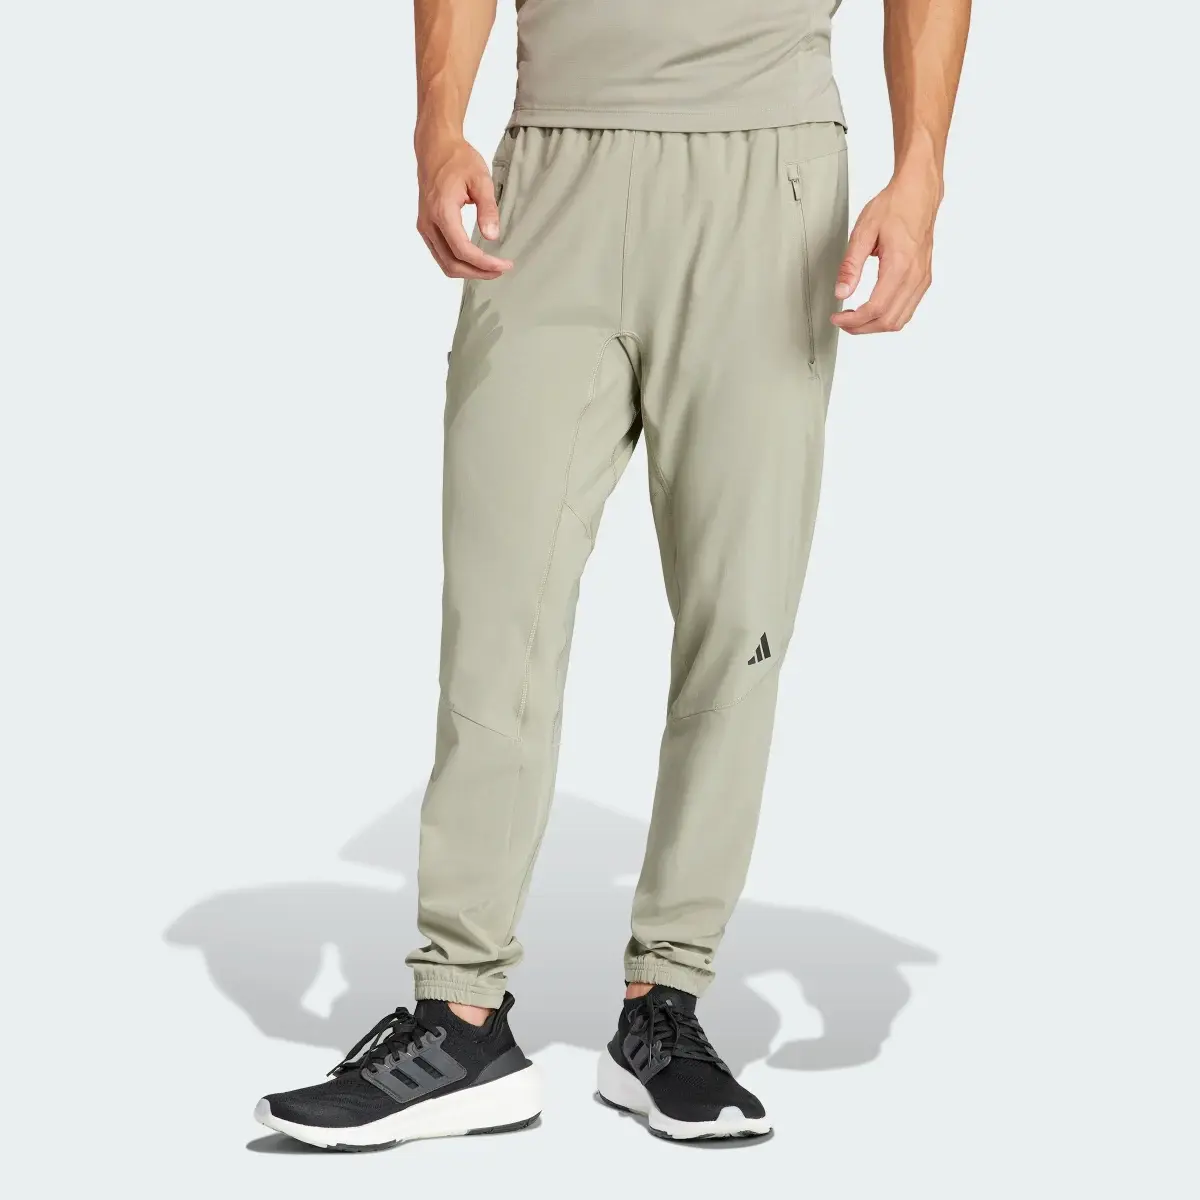 Adidas Pantaloni Designed for Training Workout. 1